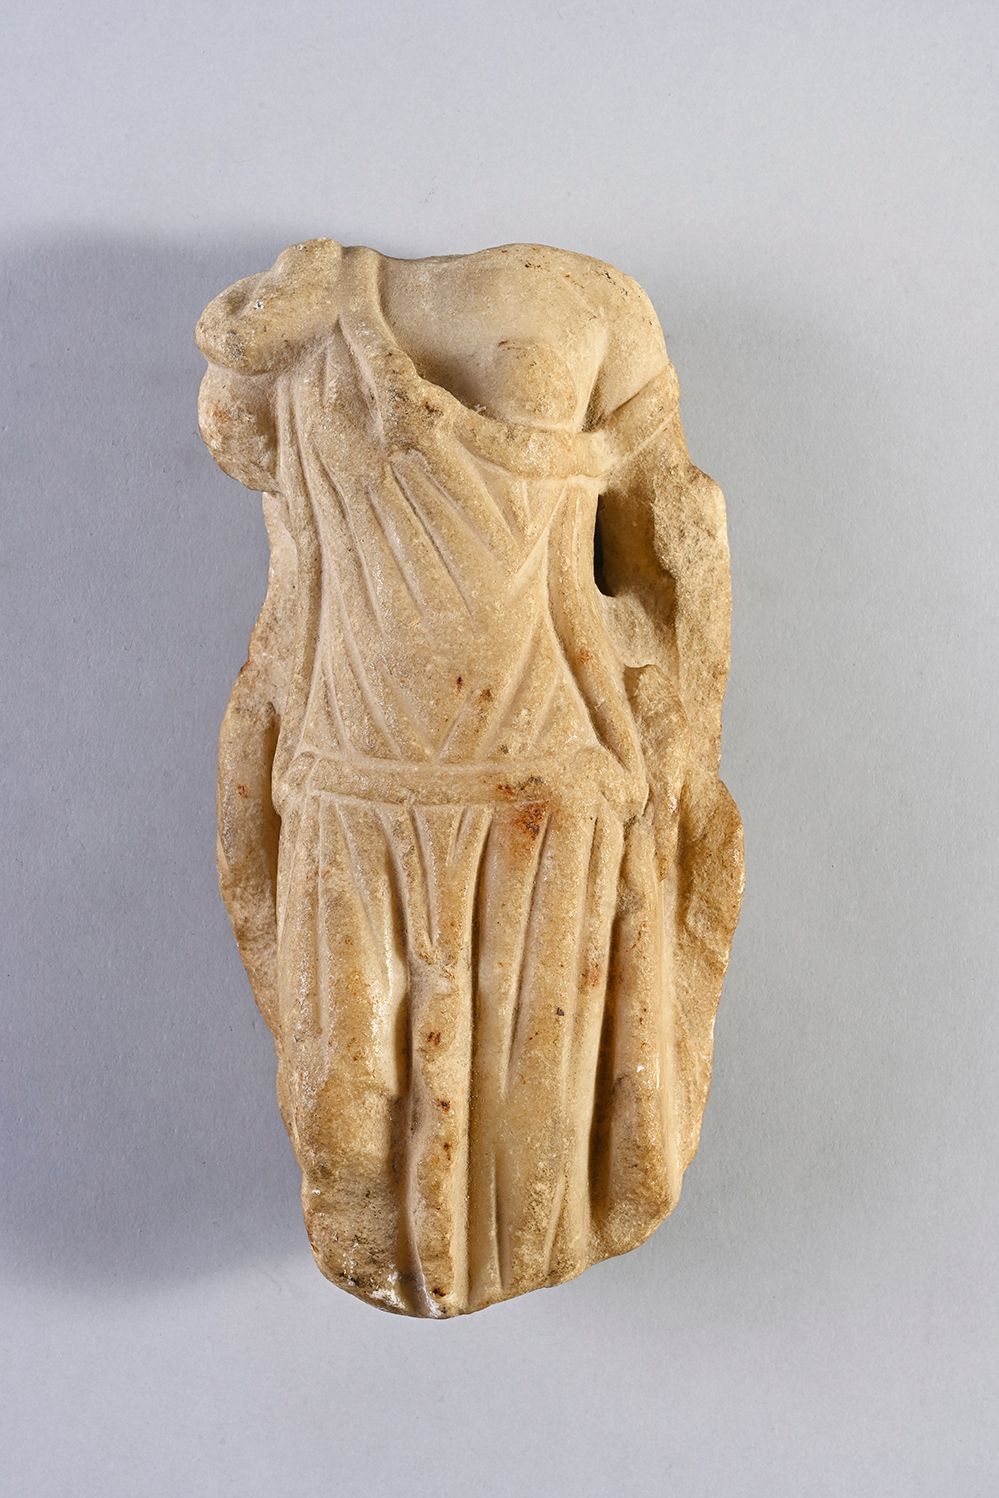 Null 残缺的女性雕像，无头，身穿腰间束紧的披肩，露出左胸。白色大理石。米色的深度着色。可见的漏洞。
罗马艺术，3世纪。
H.20厘米。